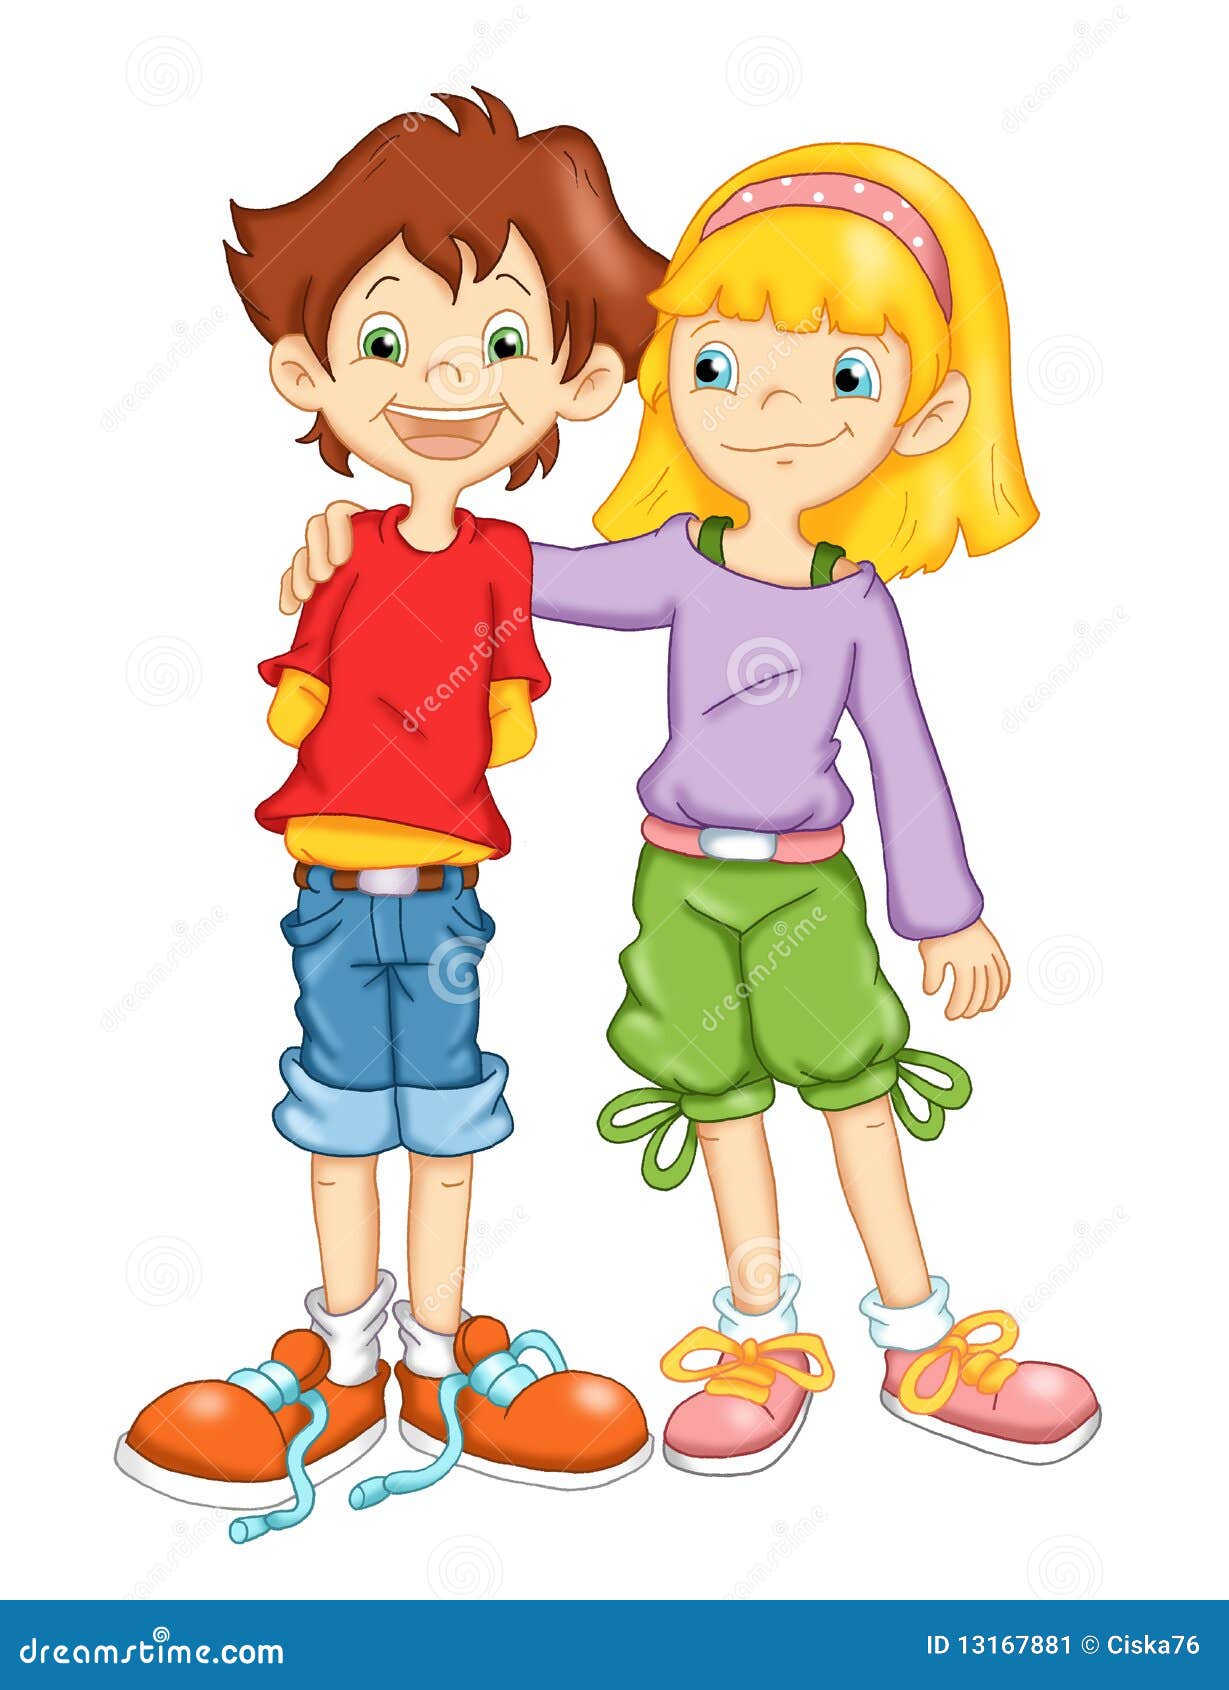 朋友/友谊-画/illustration的孩子 向量例证. 插画 包括有 男朋友, 图象, 现有量, 女孩 - 54955534